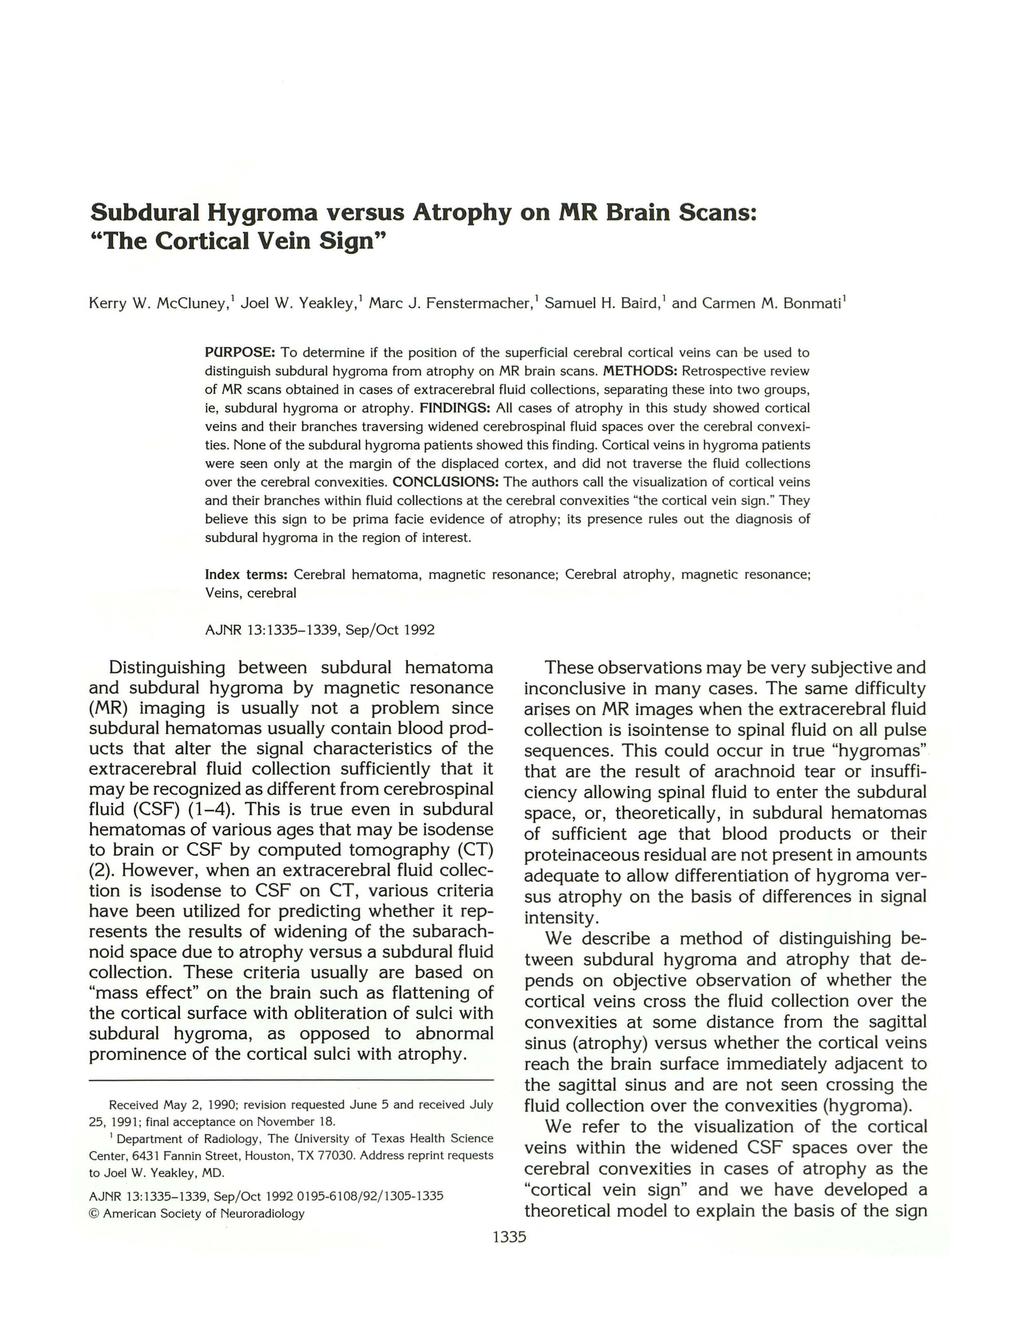 Subdural Hygroma versus Atrophy on MR Brain Scans: "The Cortical Vein Sign" Kerry W. McCiuney, 1 Joel W. Yeakley, 1 Marc J. Fenstermacher, 1 Samuel H. Baird, 1 and Carmen M.